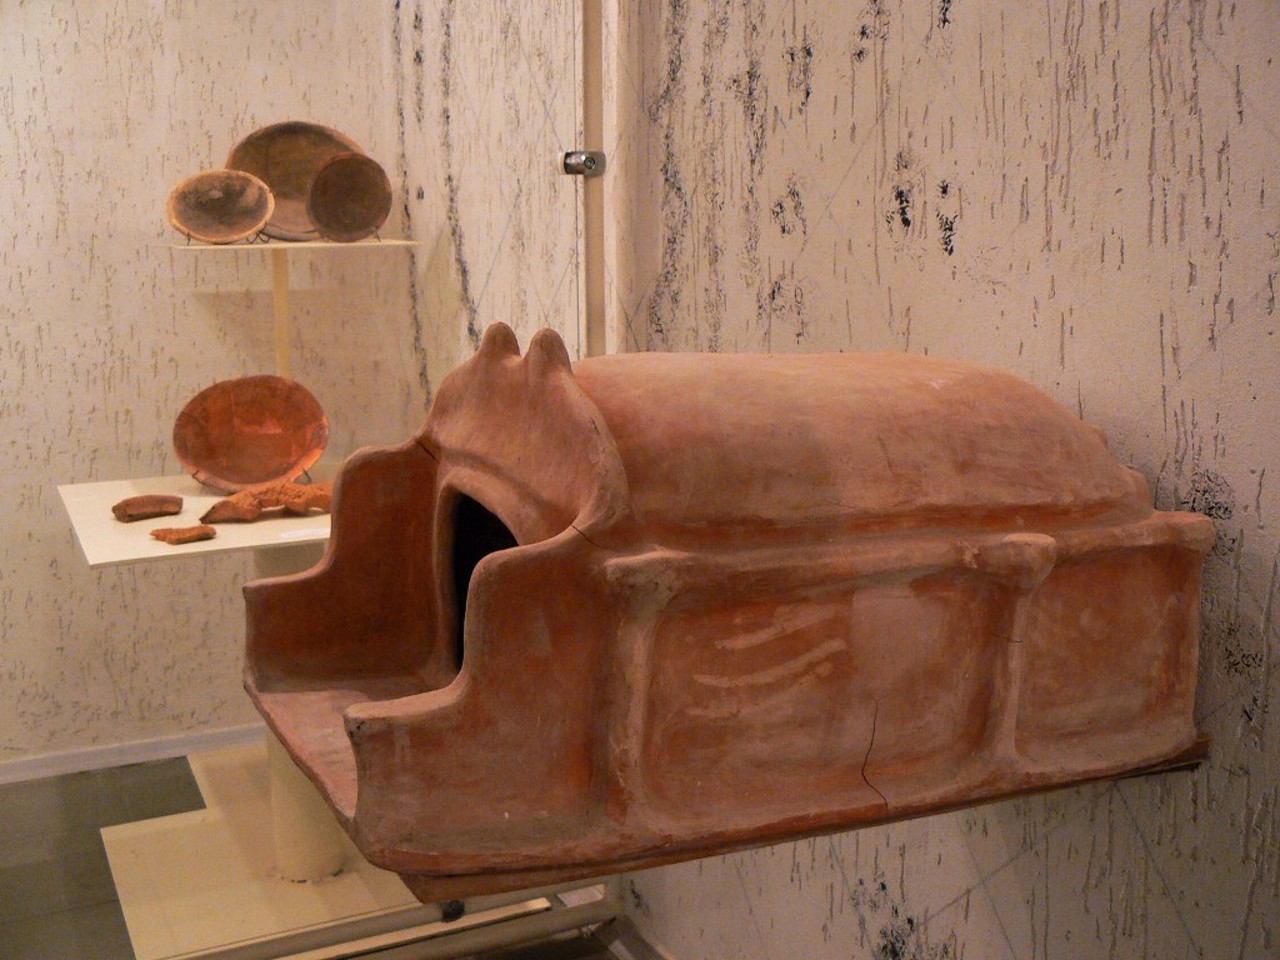 Археологический музей, Триполье